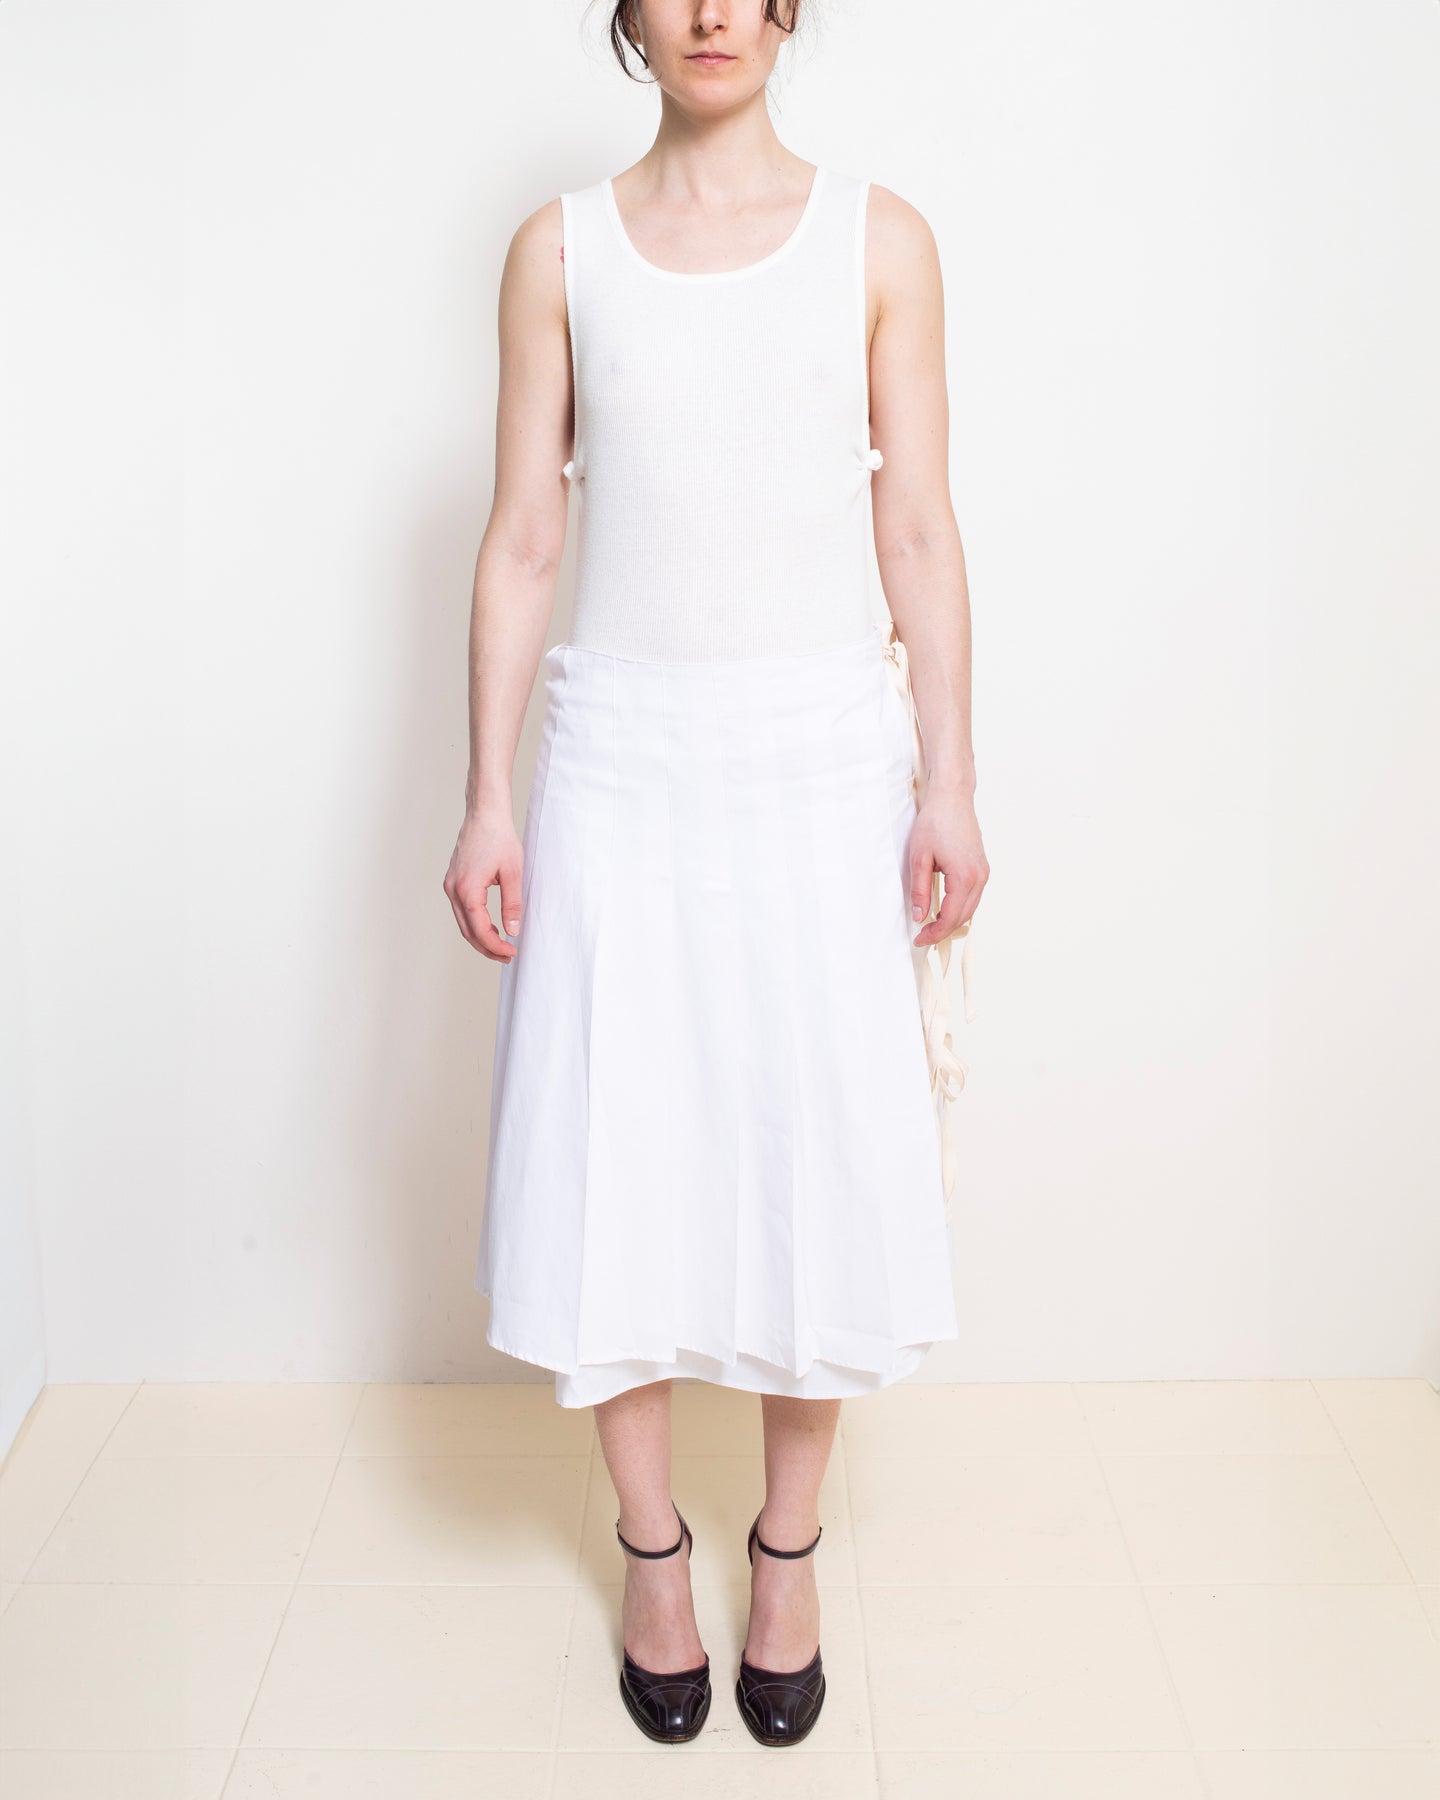 Long White Sailor Skirt